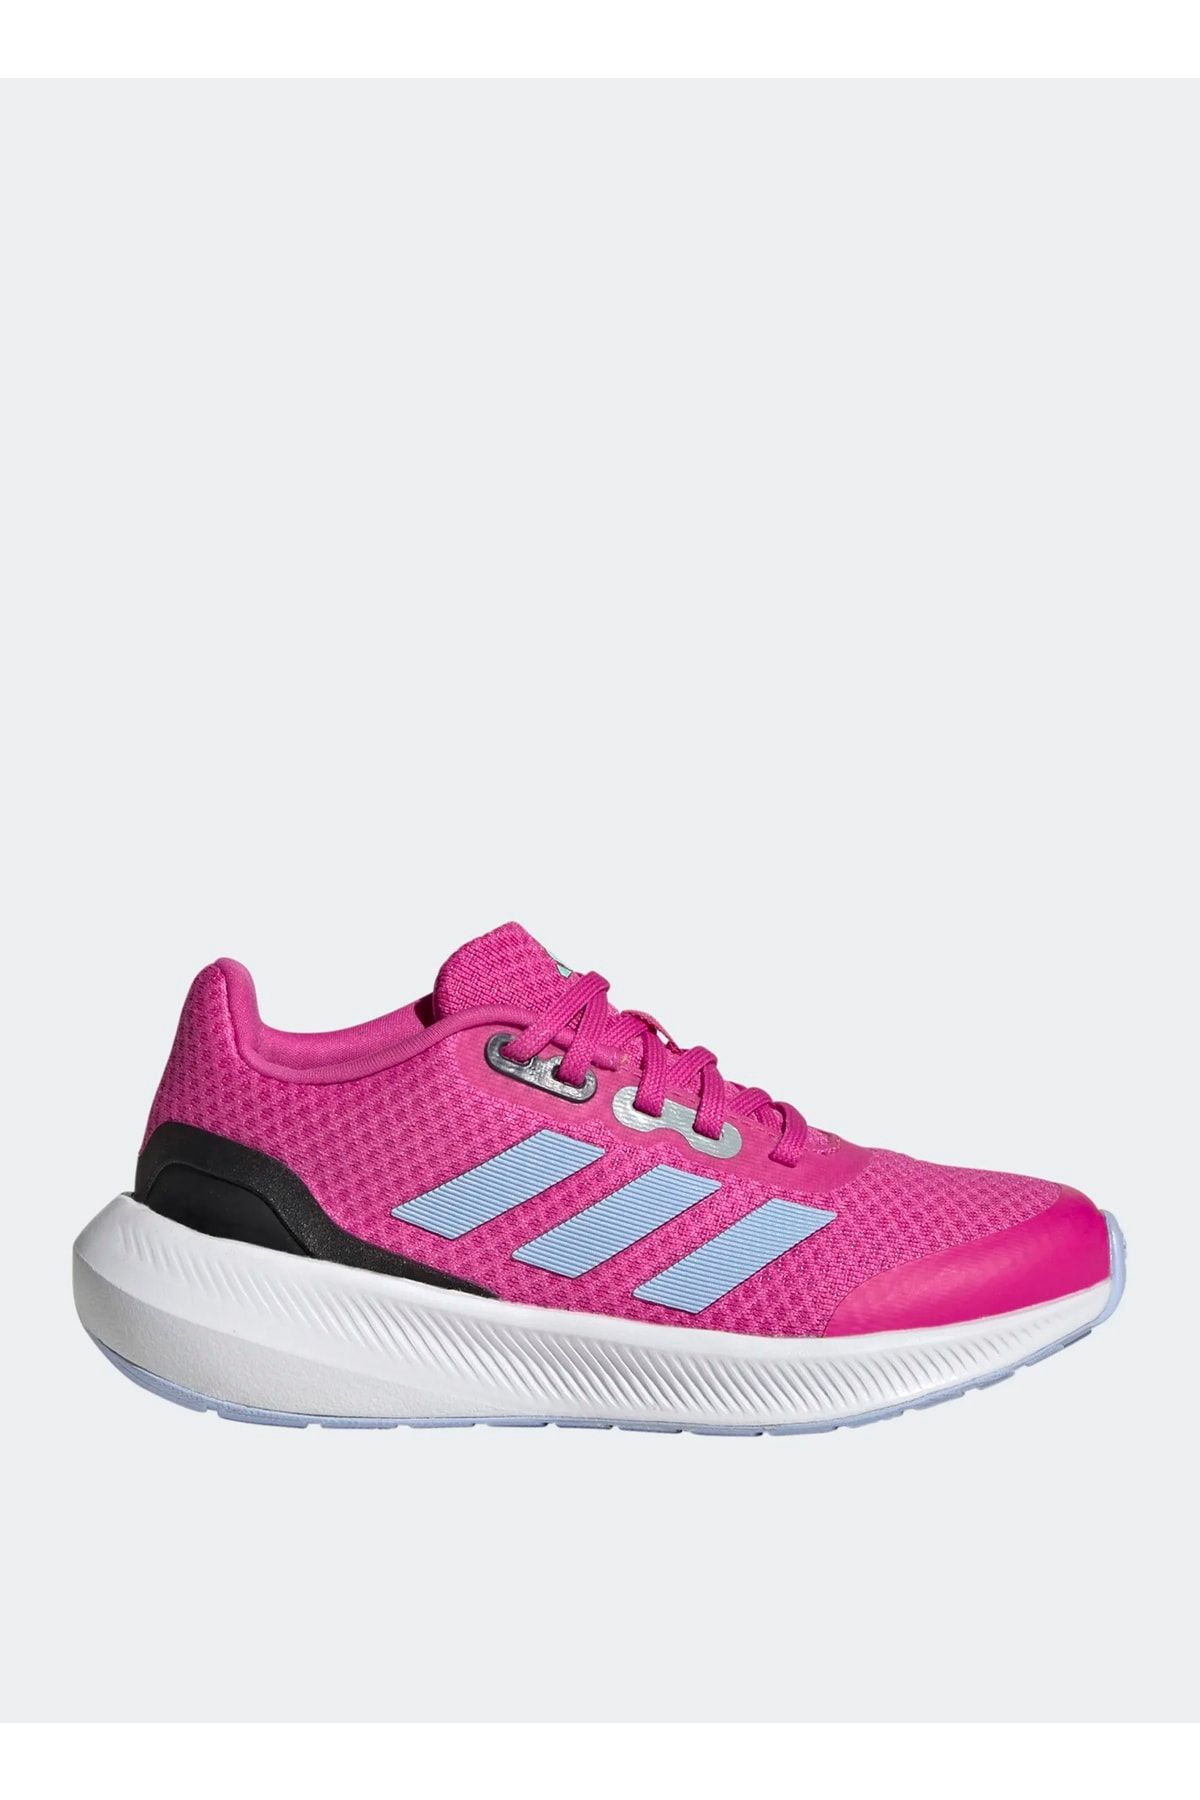 adidas Mavi Kadın Yürüyüş Ayakkabısı Hp5837 Runfalcon 3.0 K